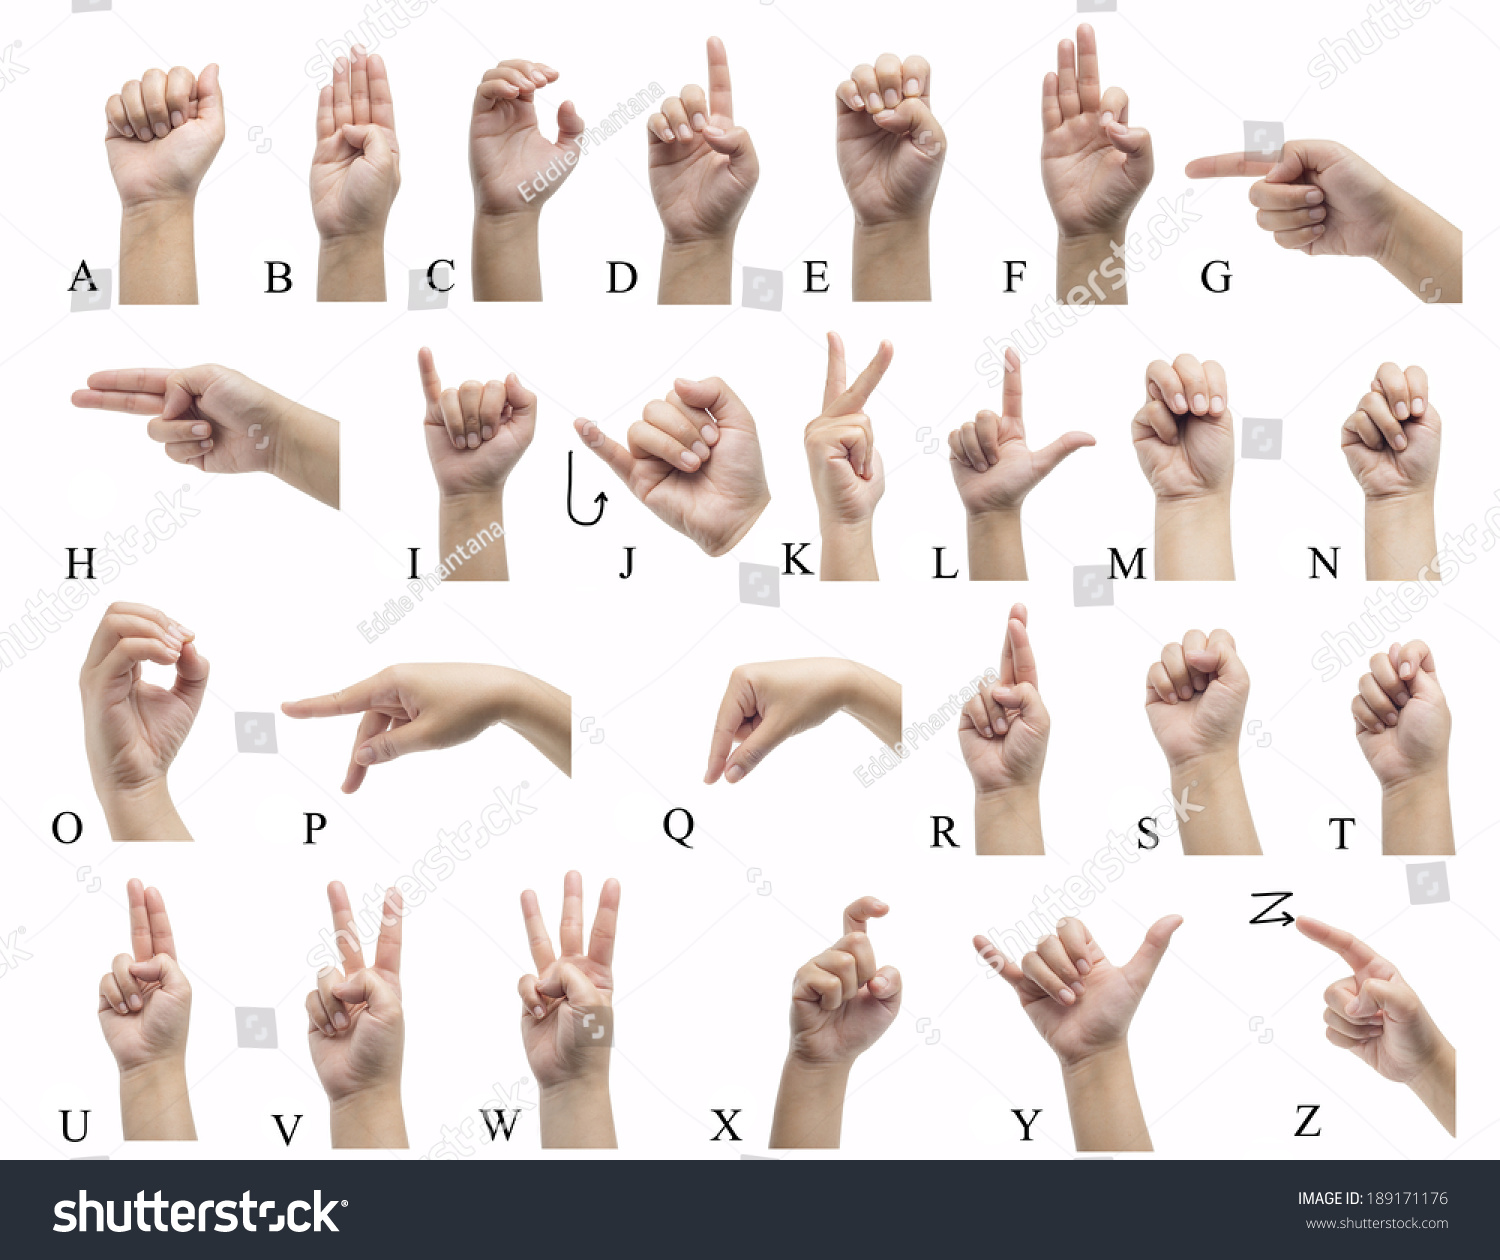 показать картинки алфавит языка жестовая